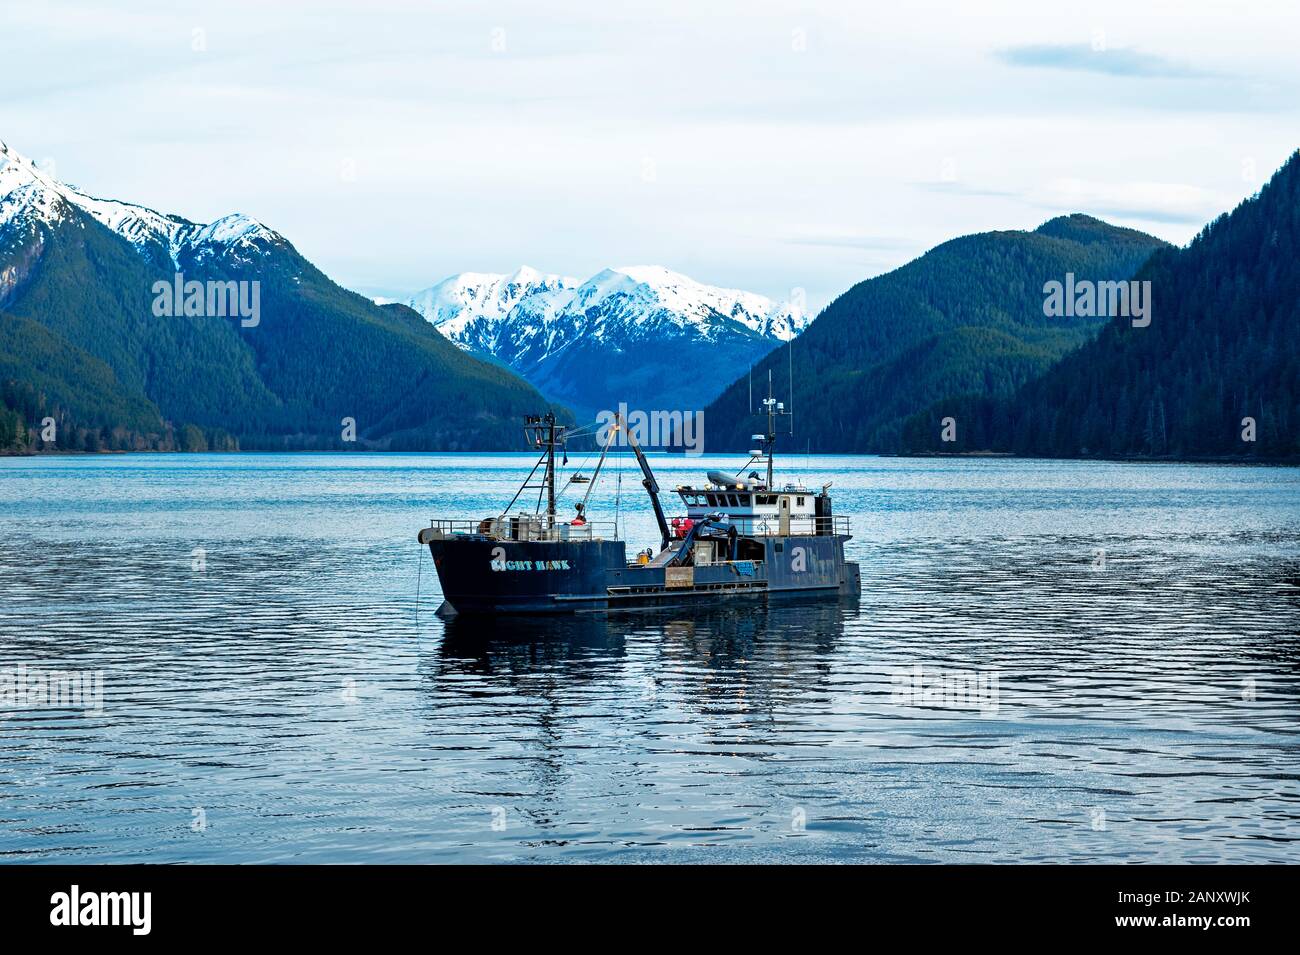 La pesca commerciale offerta barca ancorata nella baia di argento nei pressi di un impianto di trasformazione del pesce Sitka, Alaska, Stati Uniti d'America. Foto Stock